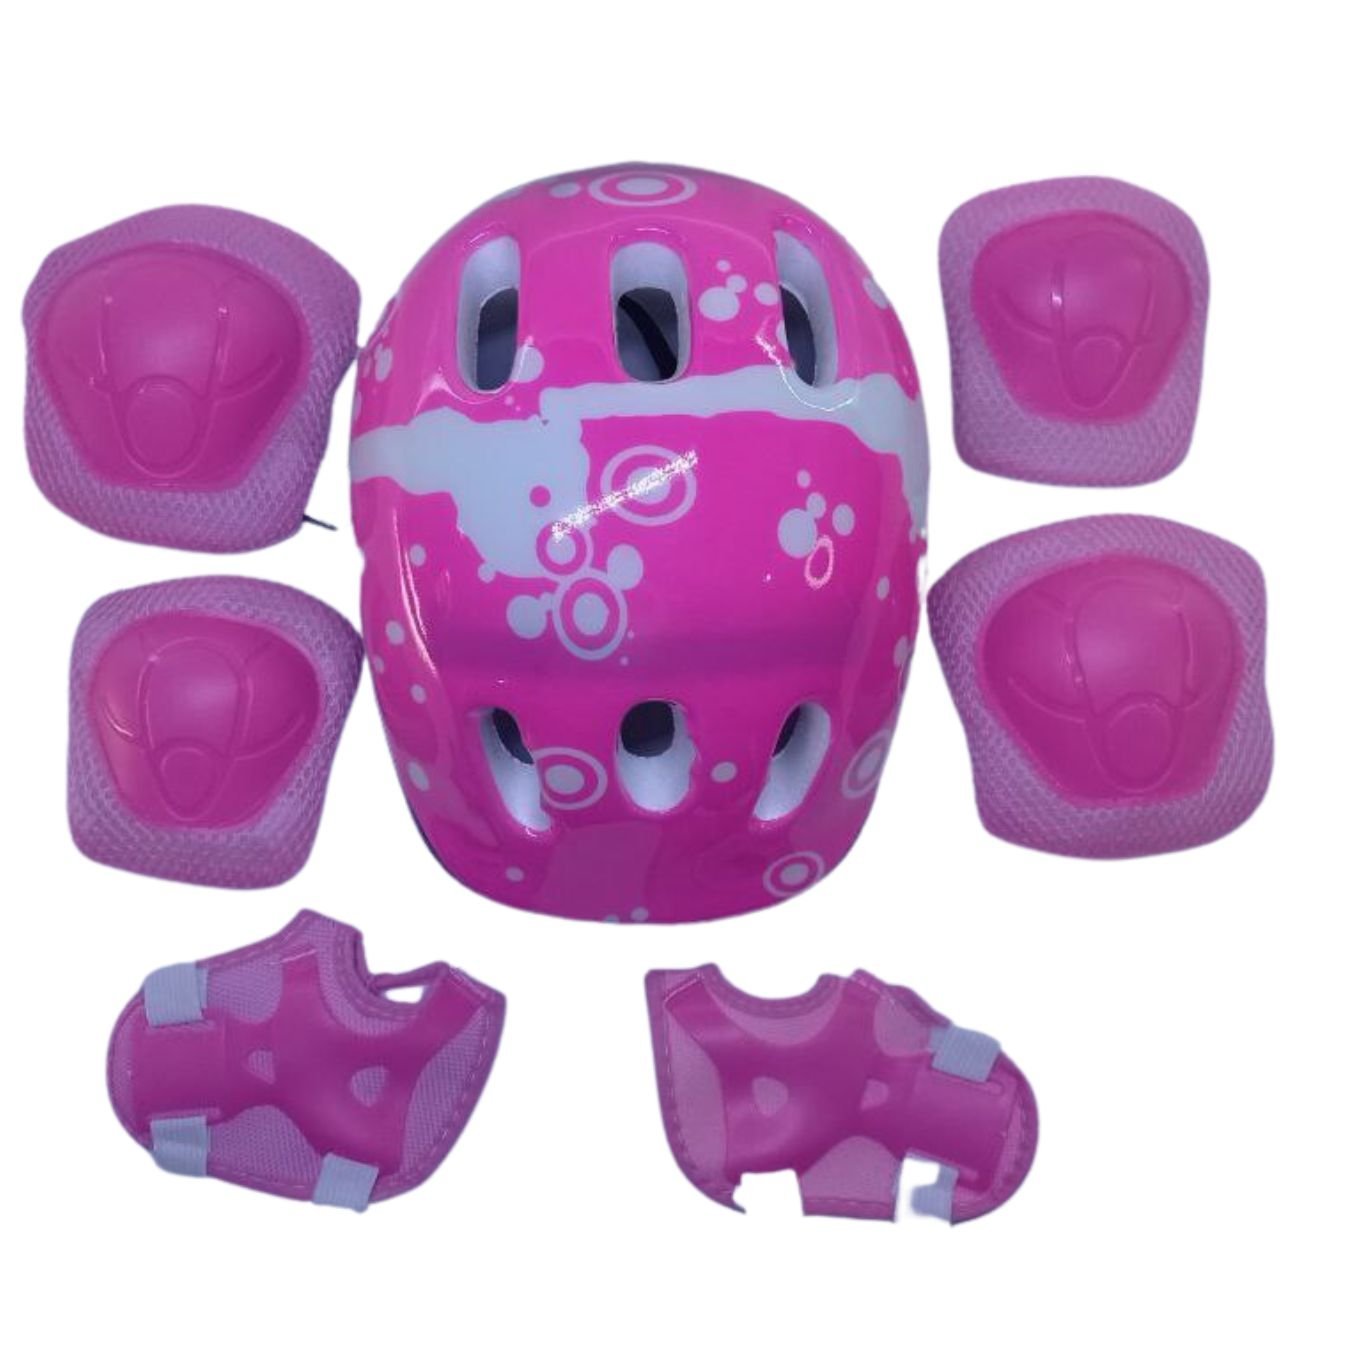 Patins Roller De 4 Rodas Rosa Com Kit de Proteção Tm:36/39 - 3